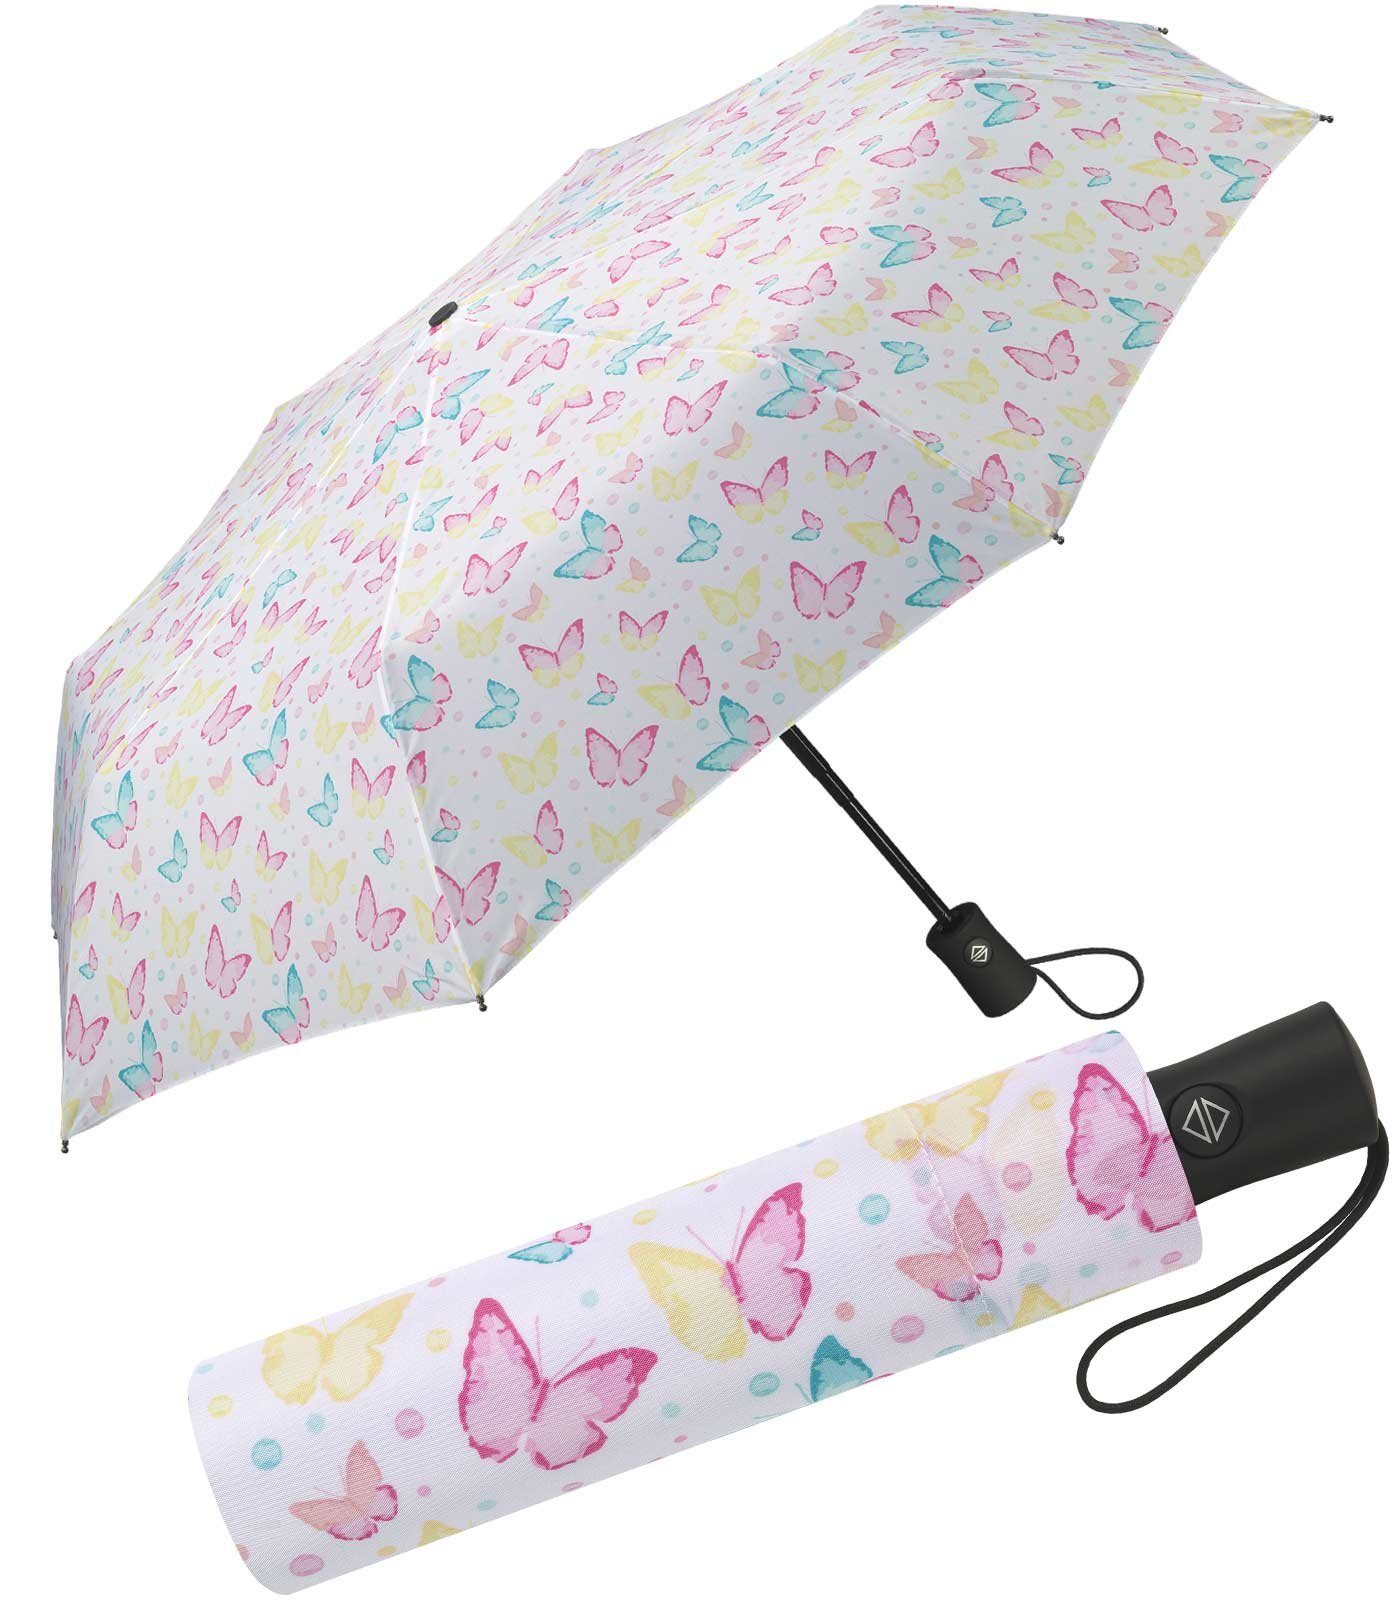 HAPPY RAIN Taschenregenschirm schöner Damen-Regenschirm mit Auf-Zu-Automatik, zauberhafte Motive in zarten Pastellfarben